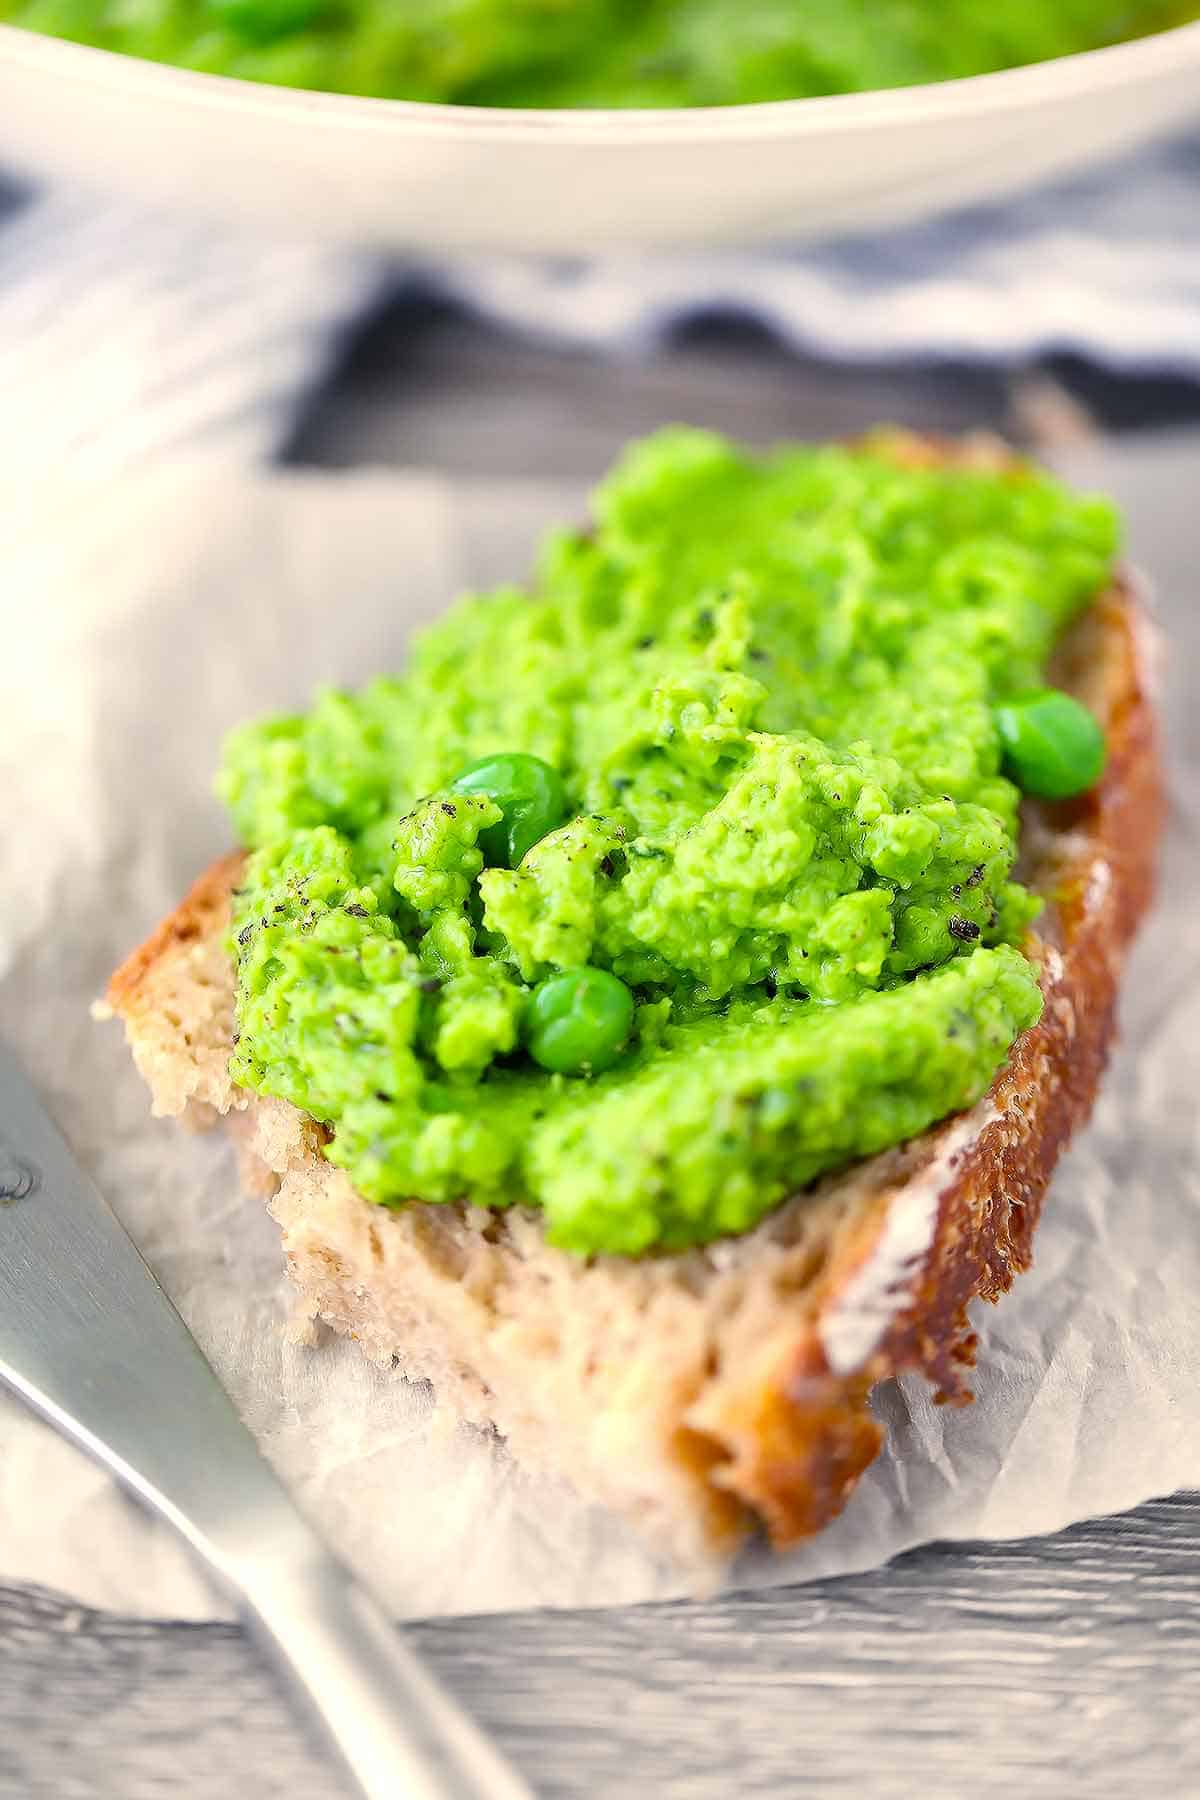 Pea hummus spread on sourdough bread.